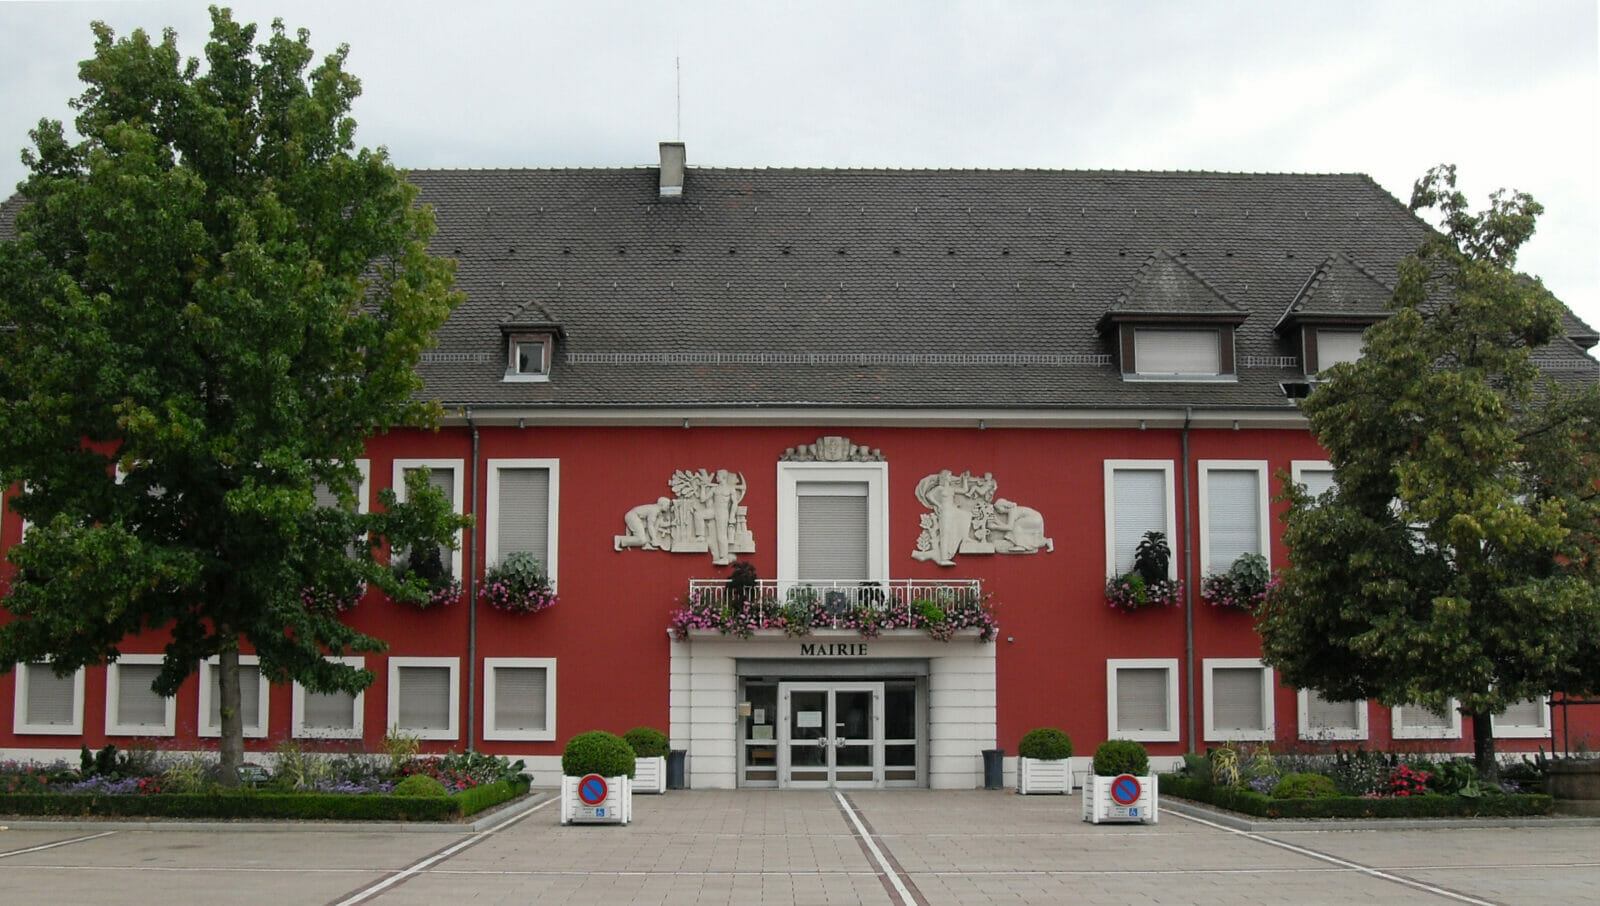 Wittelsheim